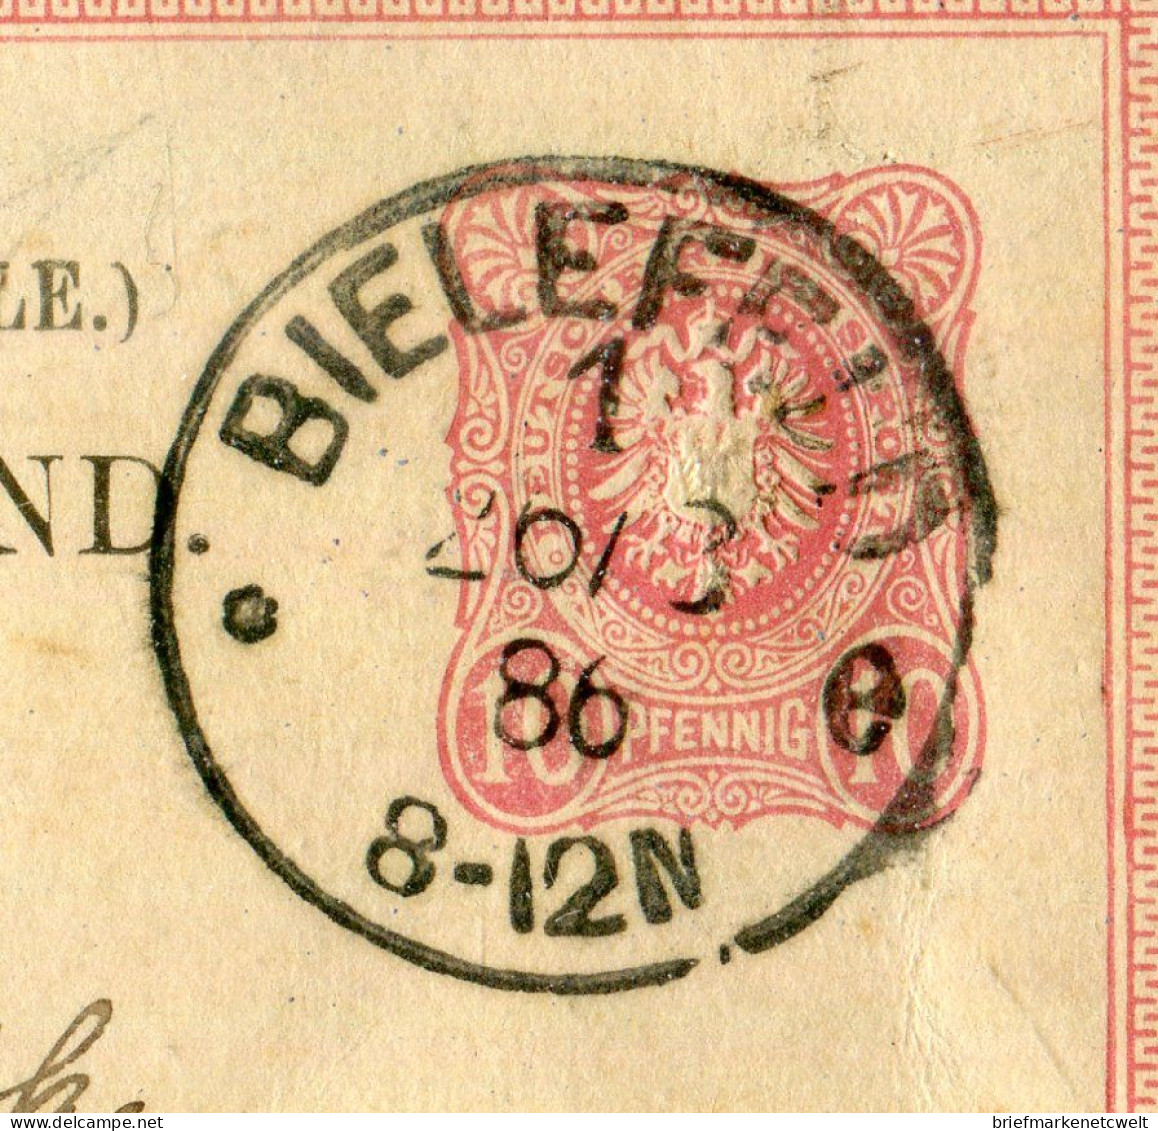 "DEUTSCHES REICH" 1886, "Klaucke"-K1 "BIELEFELD" Auf Postkarte Nach Italien (B1177) - Tarjetas